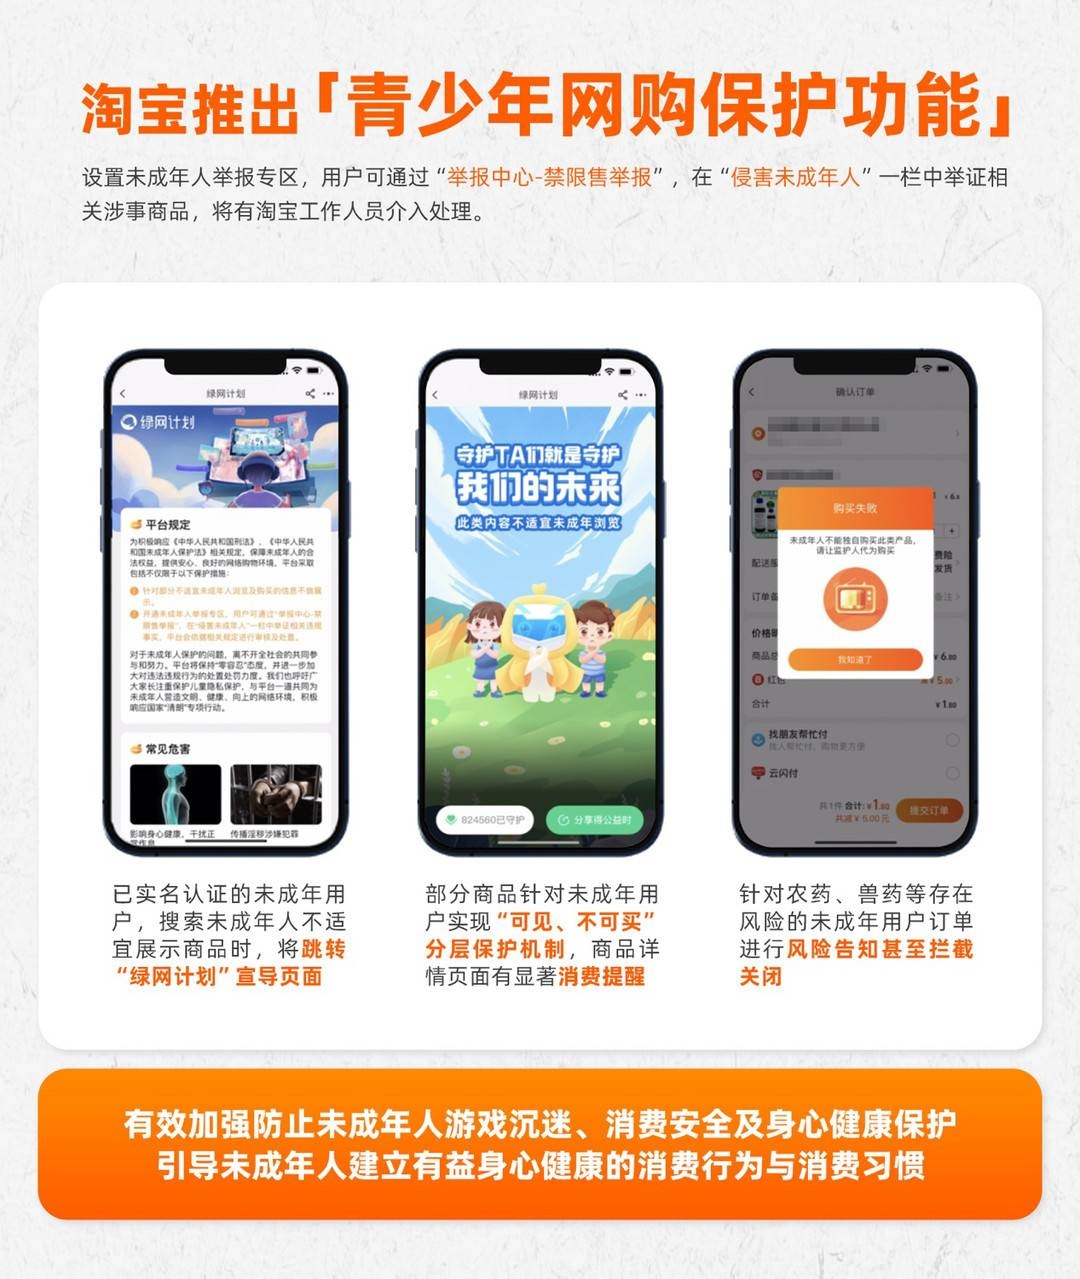 月31日电商报/淘宝推出青少年网购保护功能"